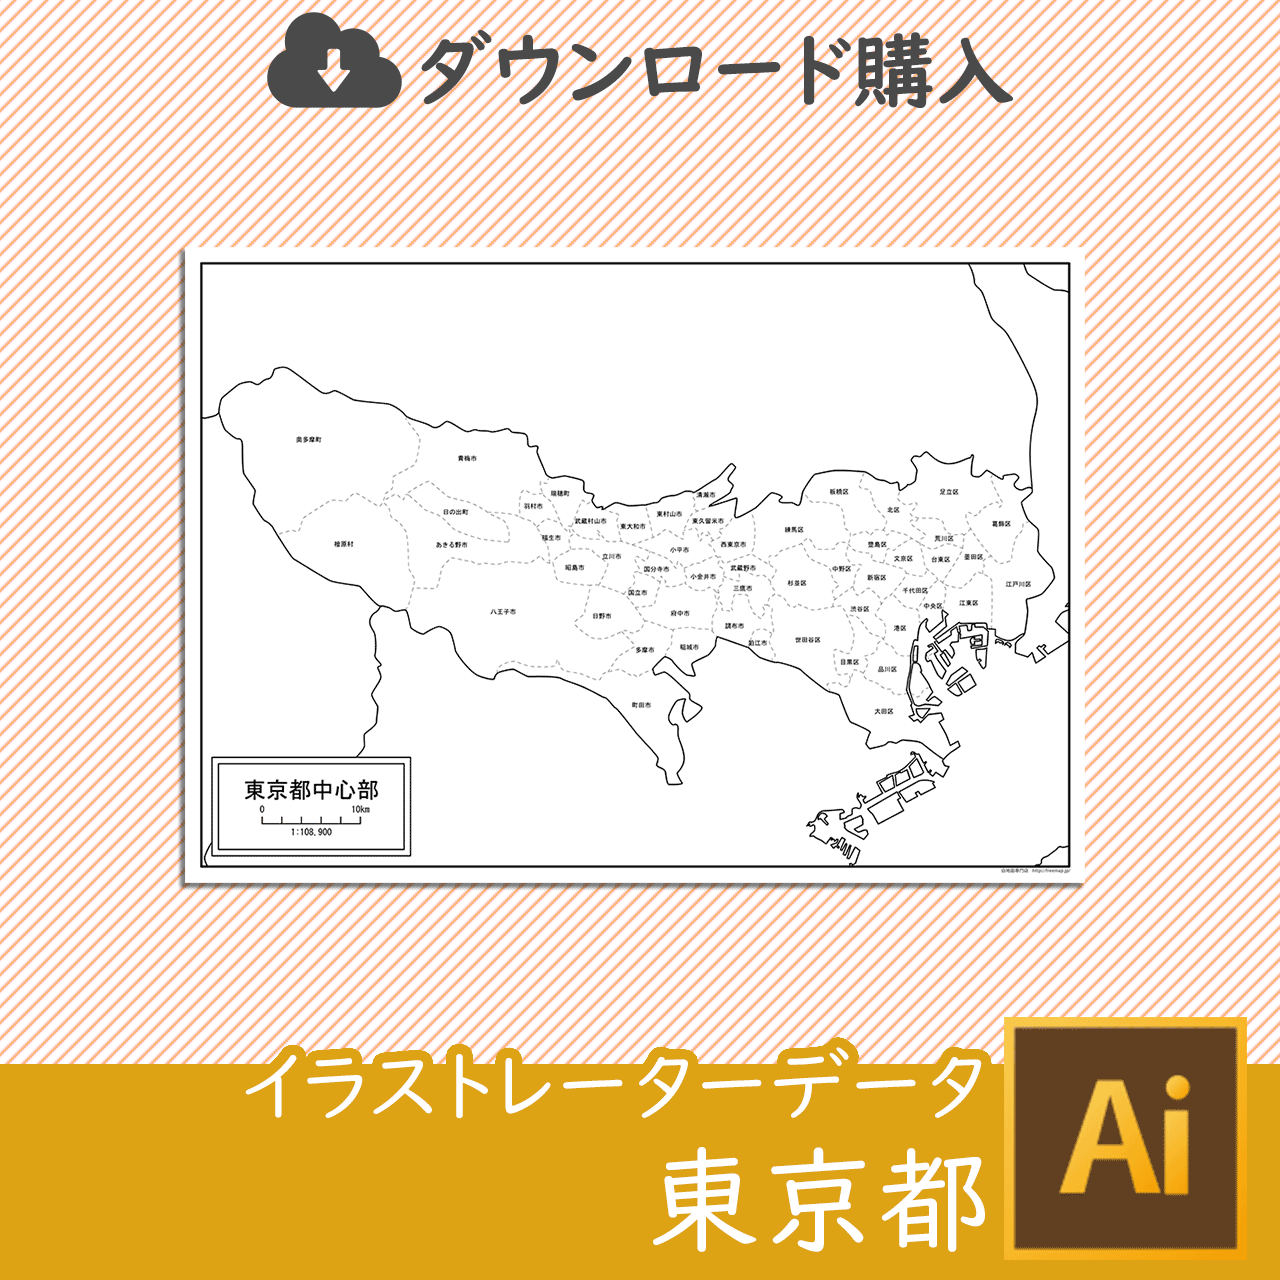 東京都の白地図データのサムネイル画像